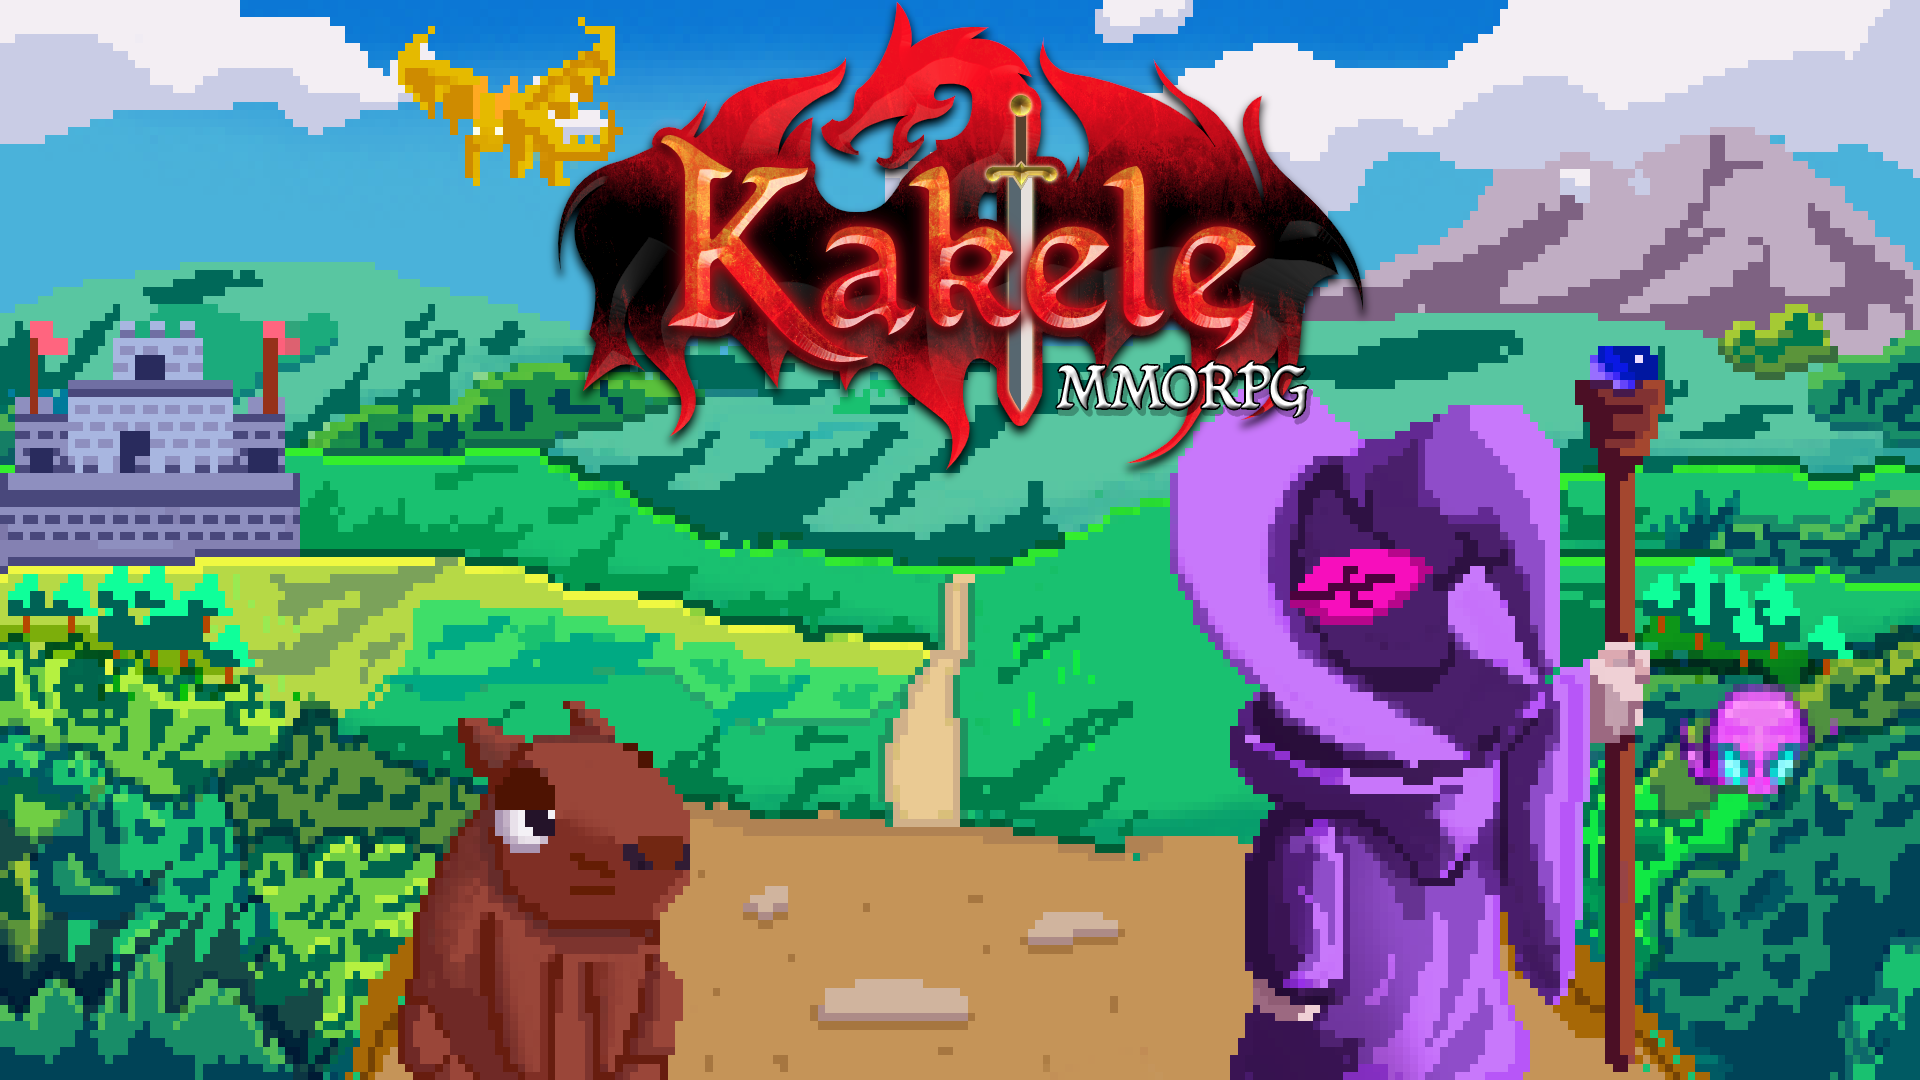 download Kakele Online - MMORPG free